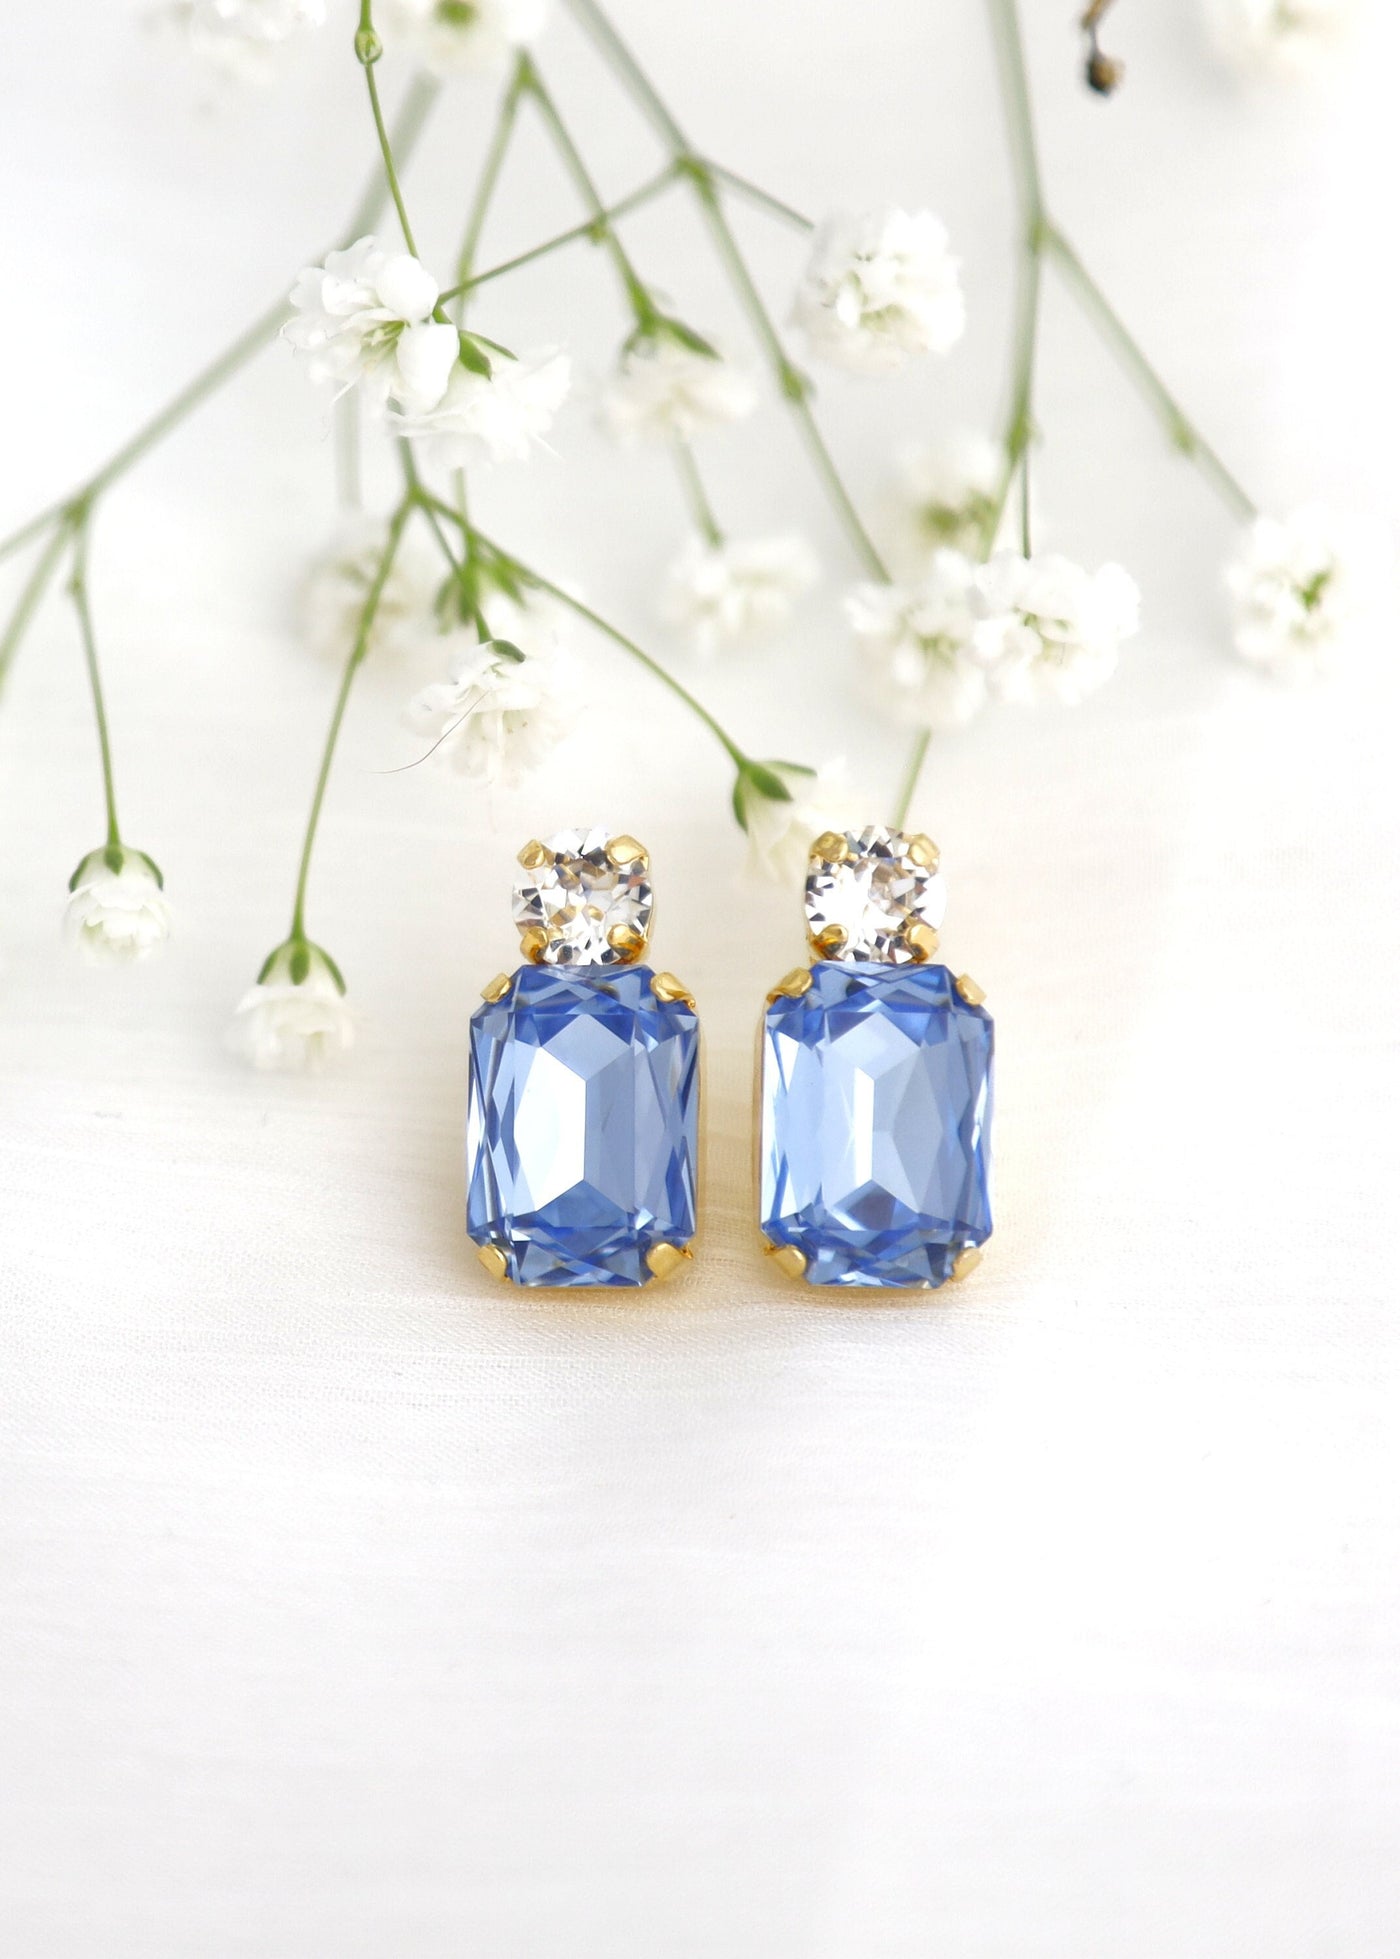 Blue Aquamarine Stud Earrings, Light Sapphire Crystal Bridal Earrings, Aquamarine Blue Bridesmaids Earrings, Light Blue Studs, Gift For Her